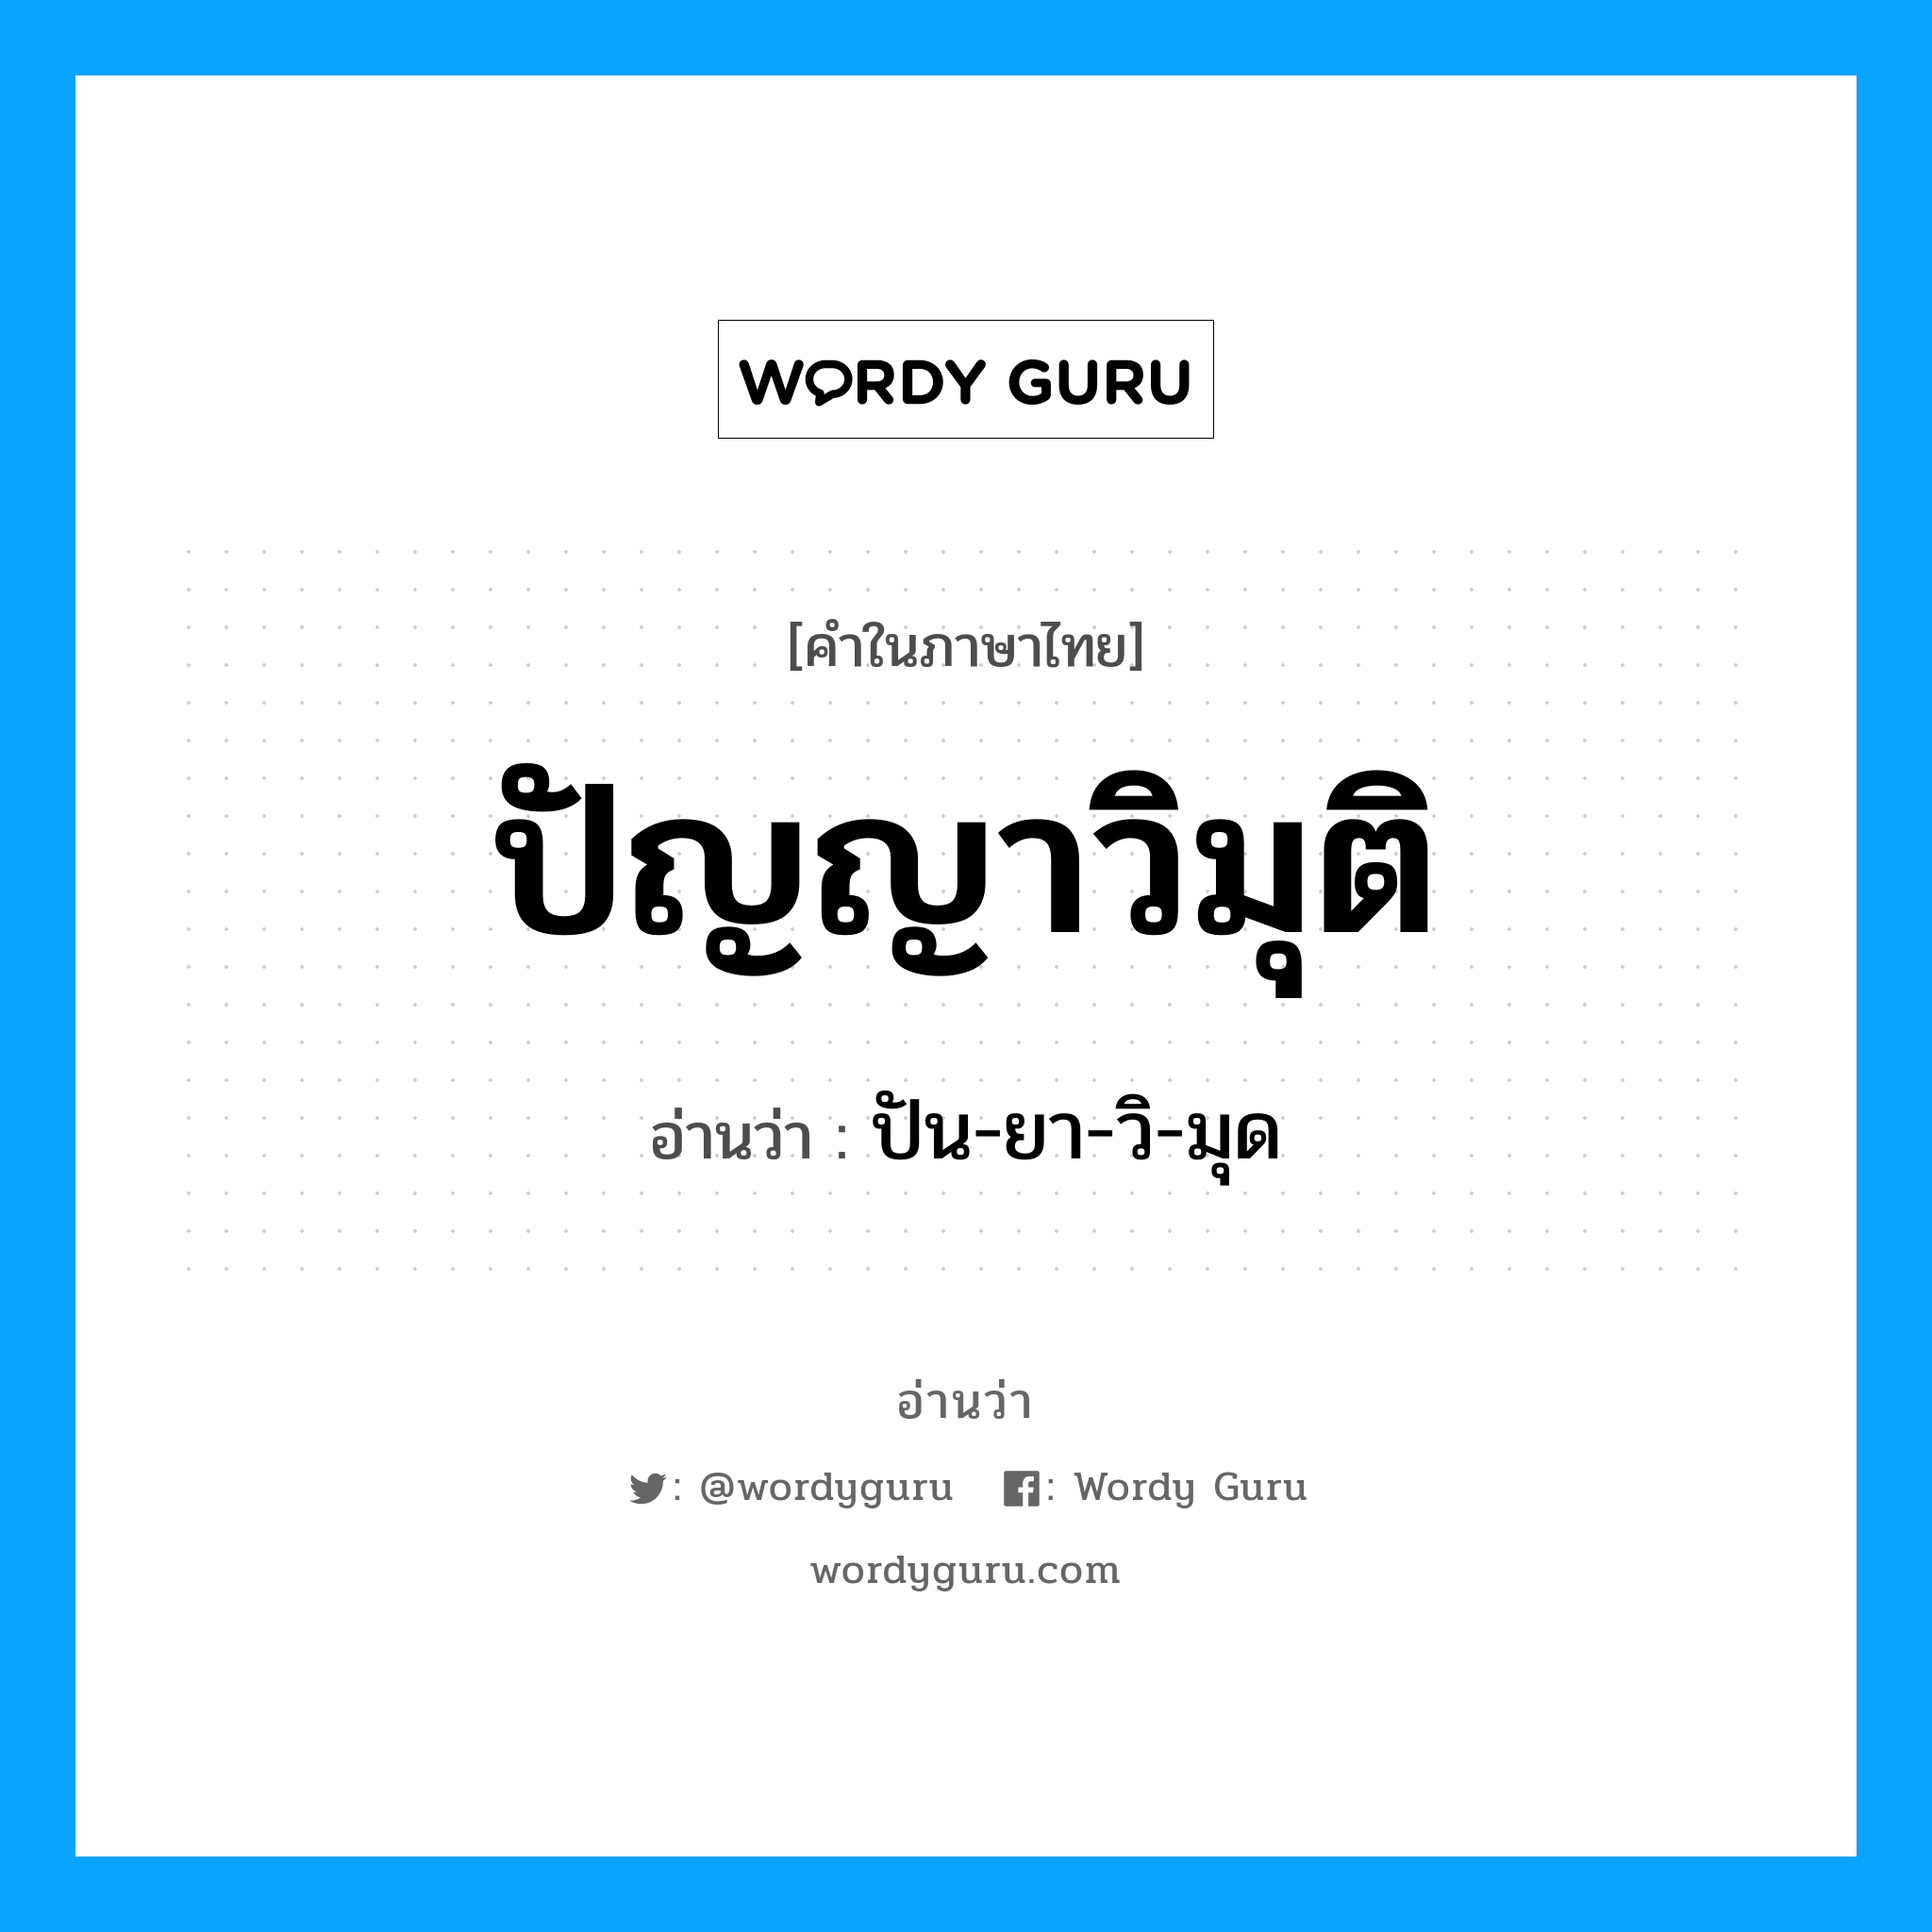 ปัน-ยา-วิ-มุด เป็นคำอ่านของคำไหน?, คำในภาษาไทย ปัน-ยา-วิ-มุด อ่านว่า ปัญญาวิมุติ